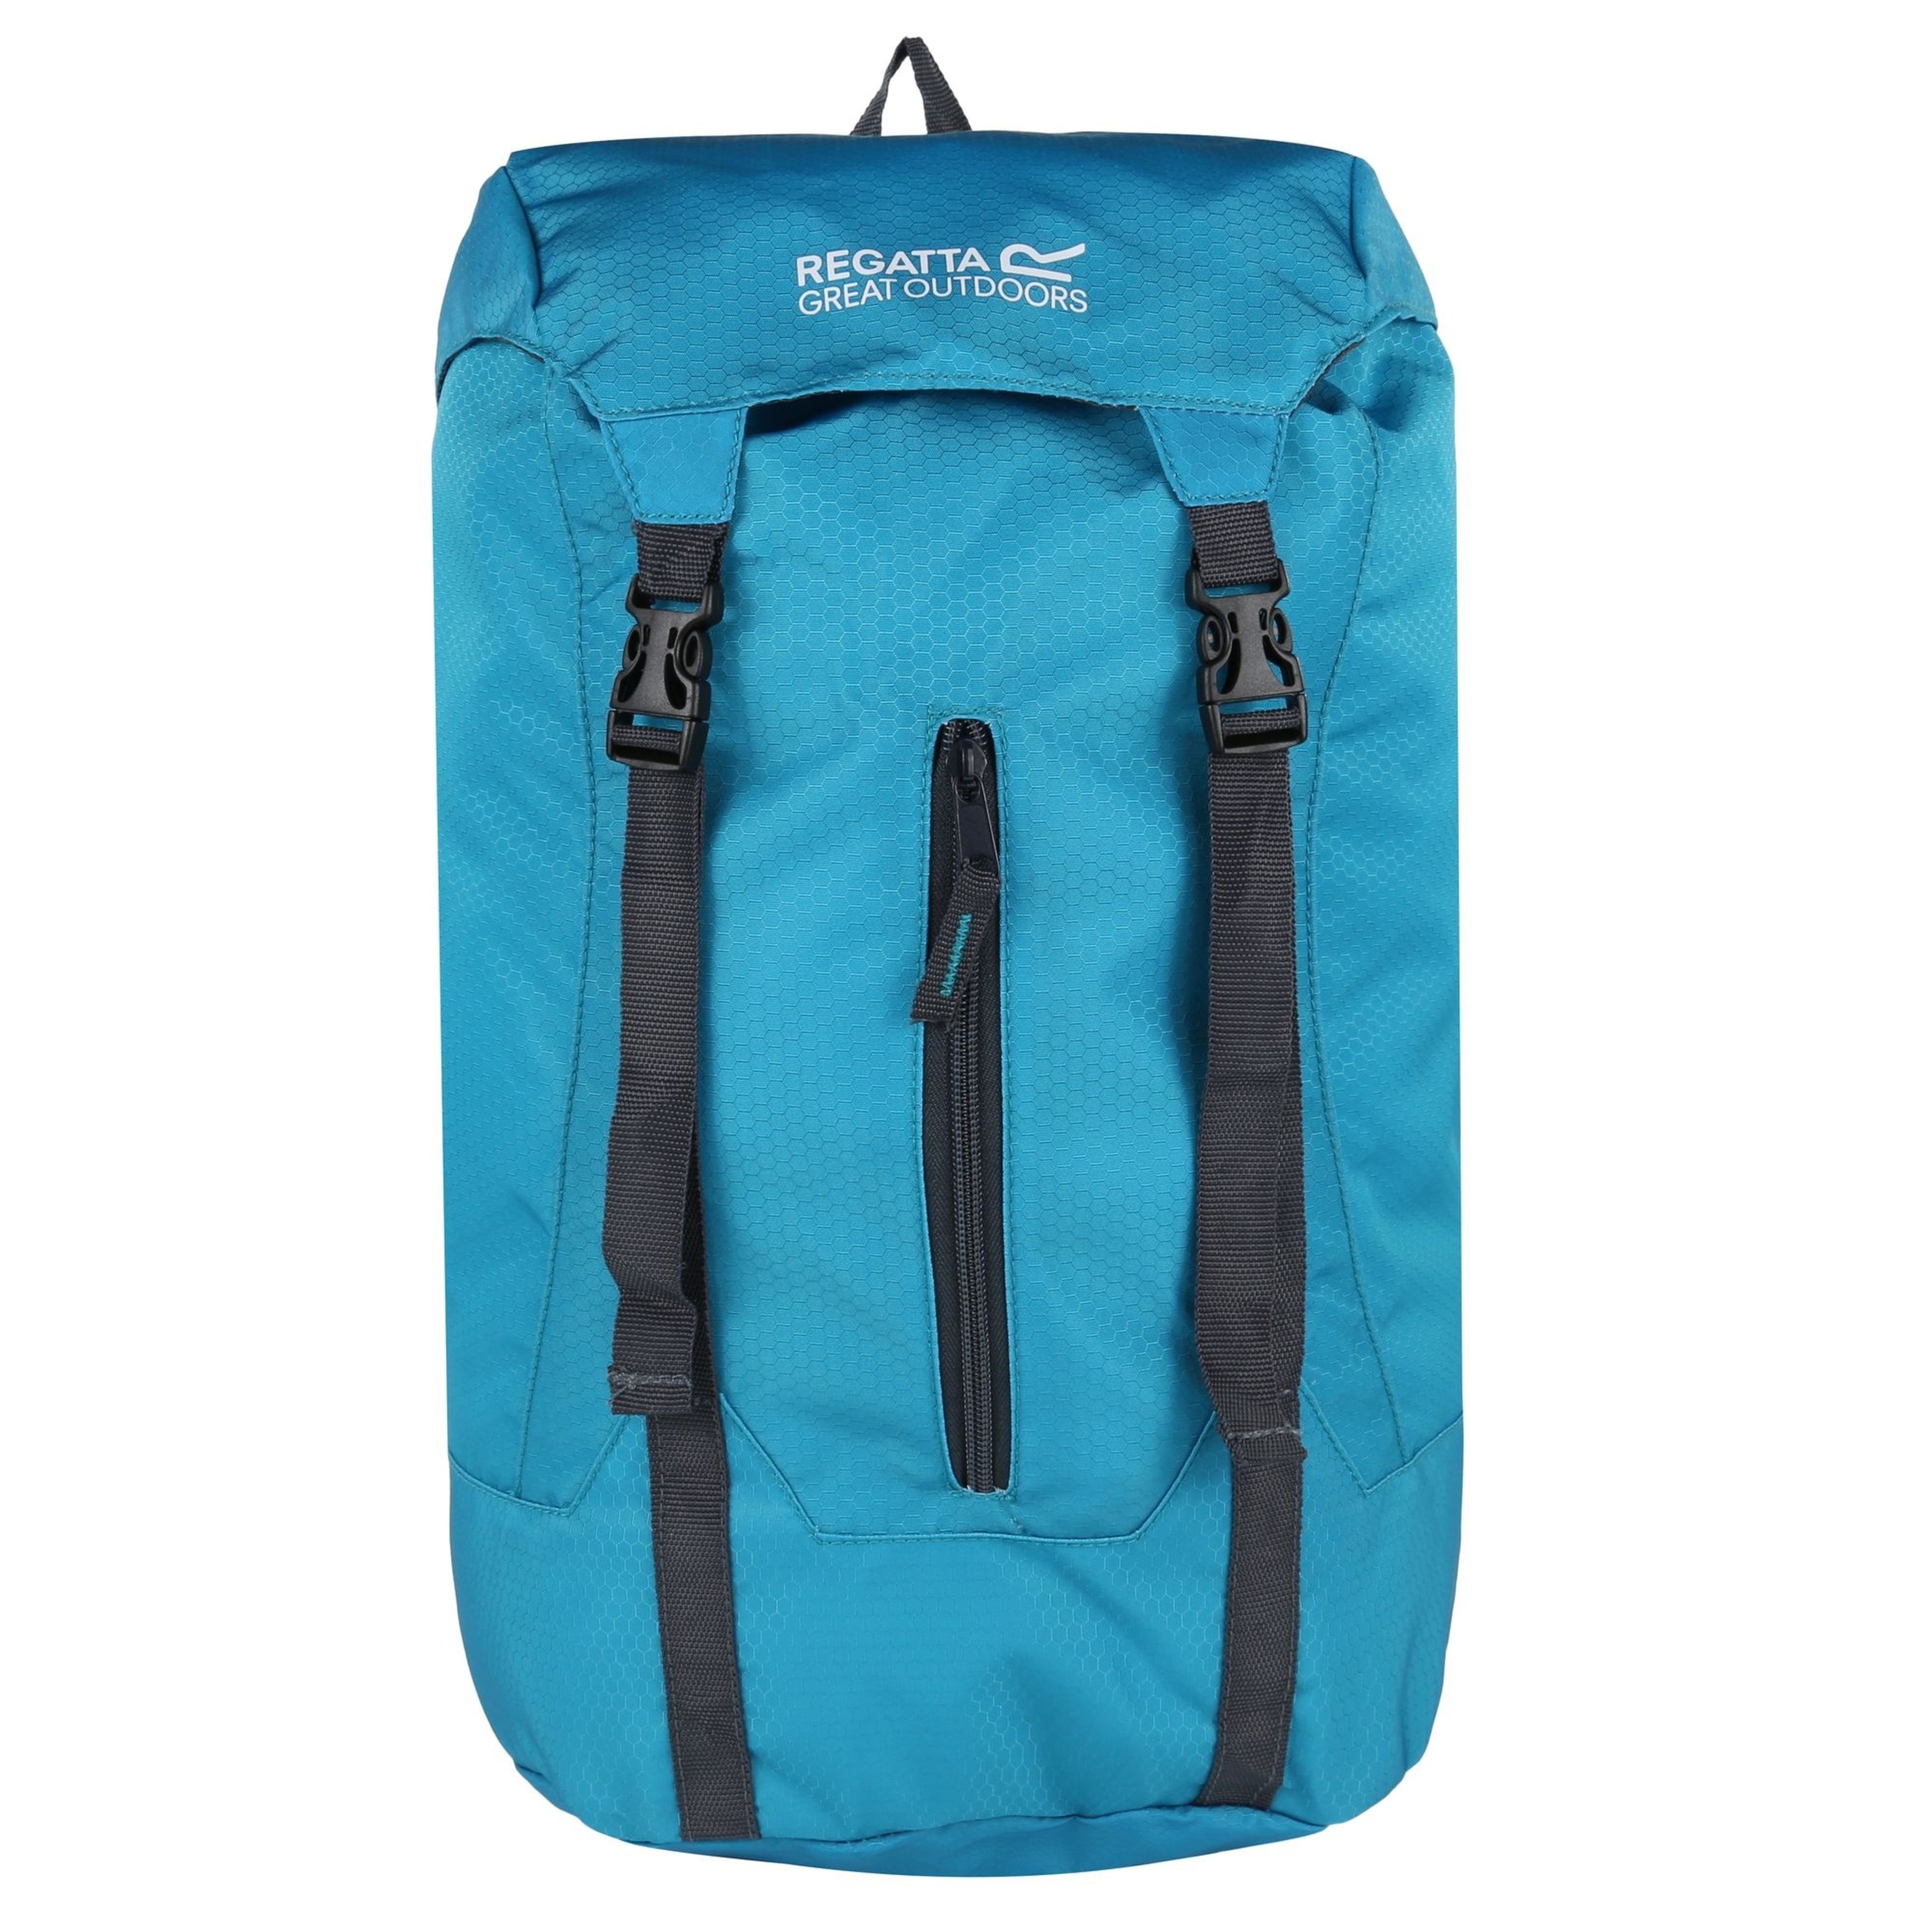 Regatta - Mochila Modelo Easypack De 25 Litros De Capacidad (Azul Agua)